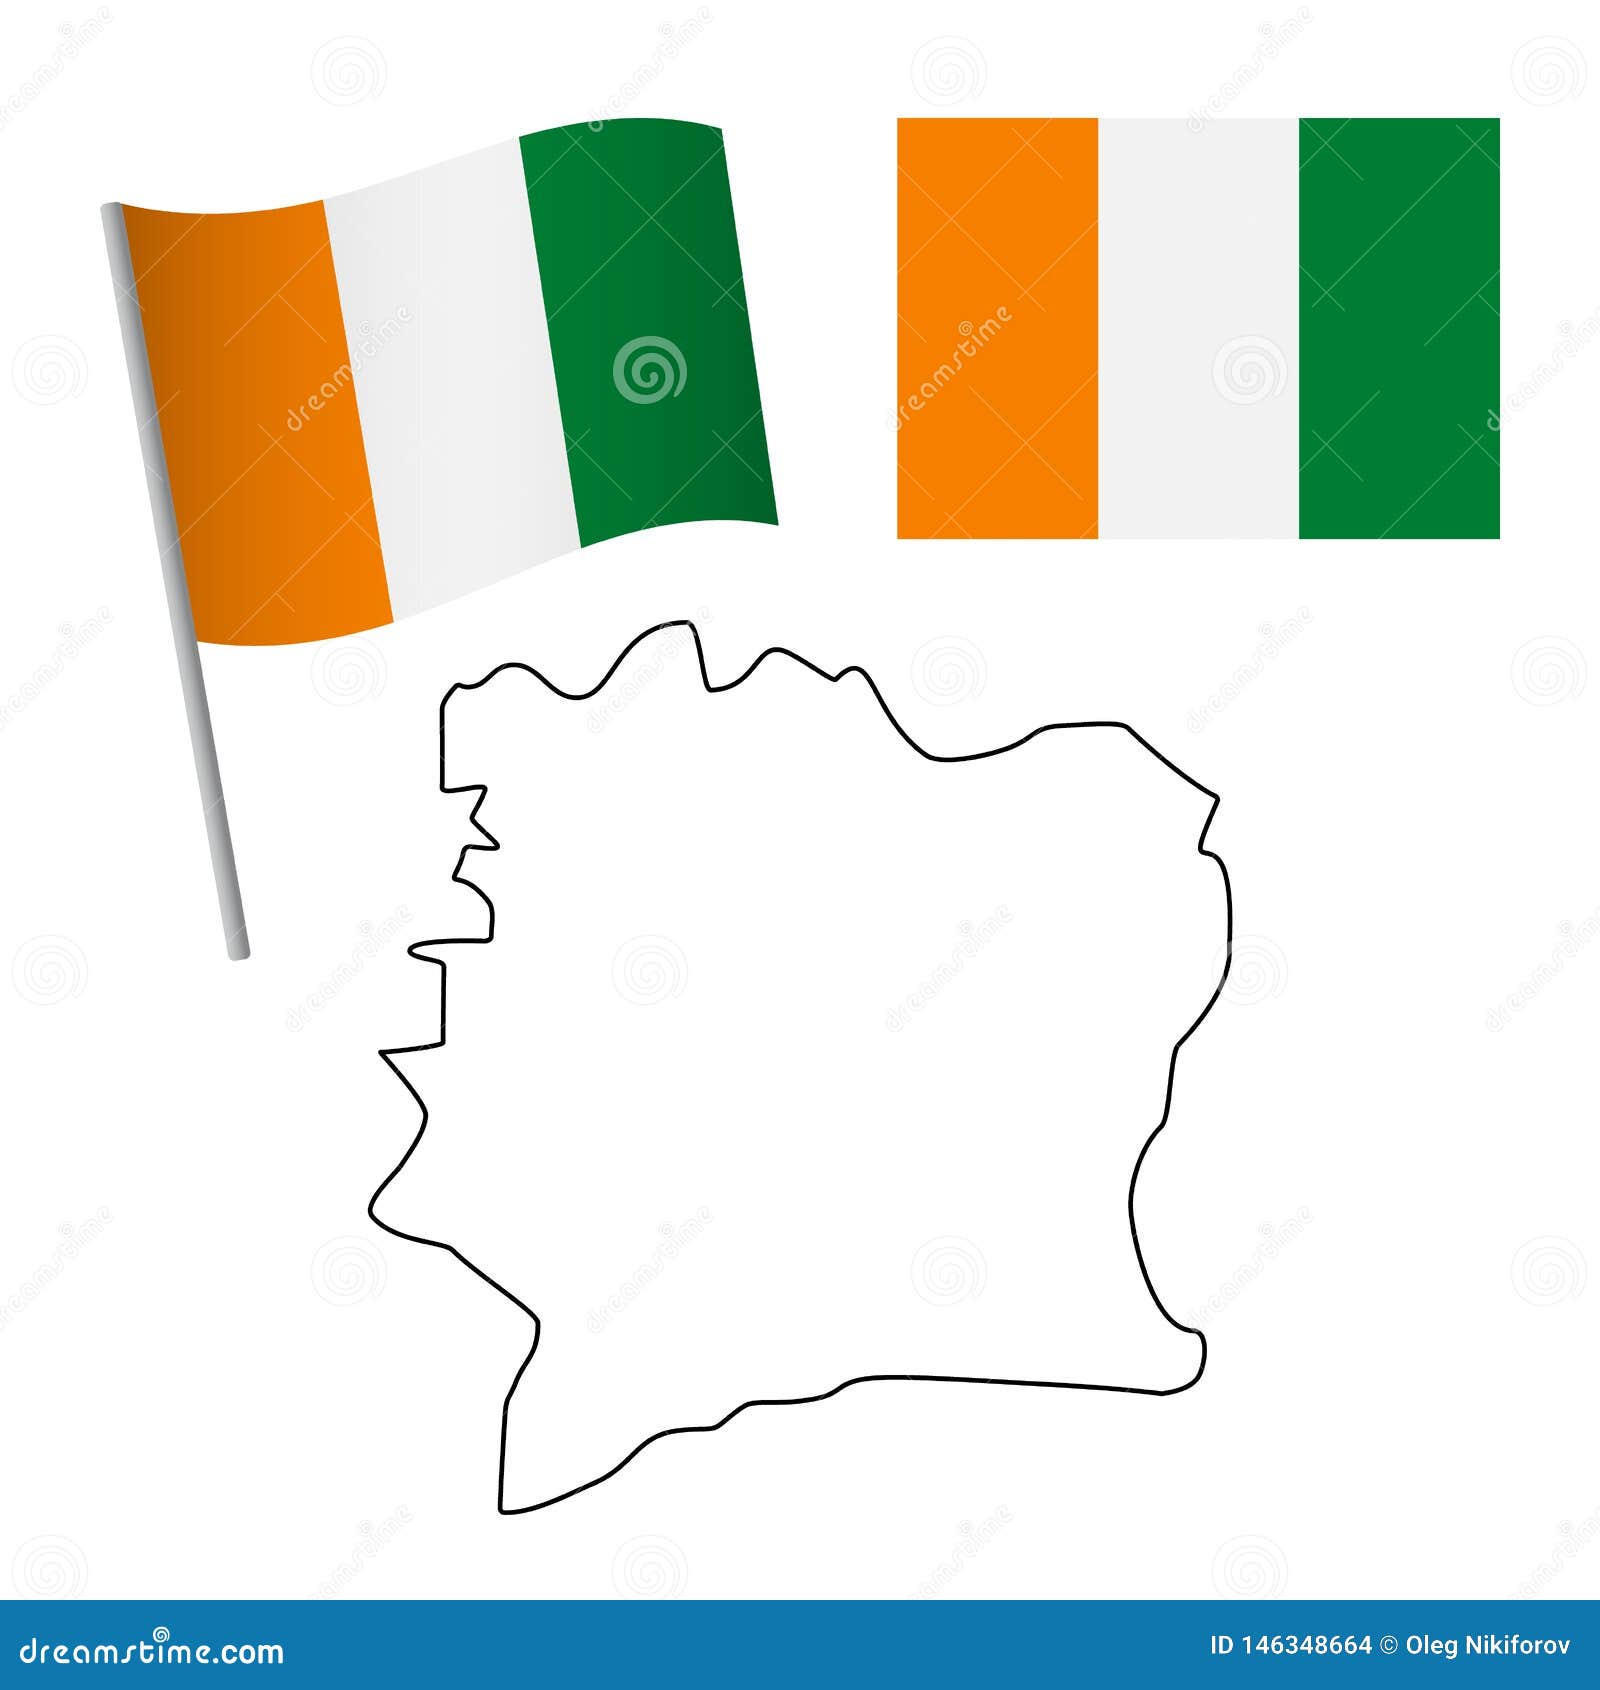 cote d'ivoire (ivory coast) flag. National flag of cote d'ivoire